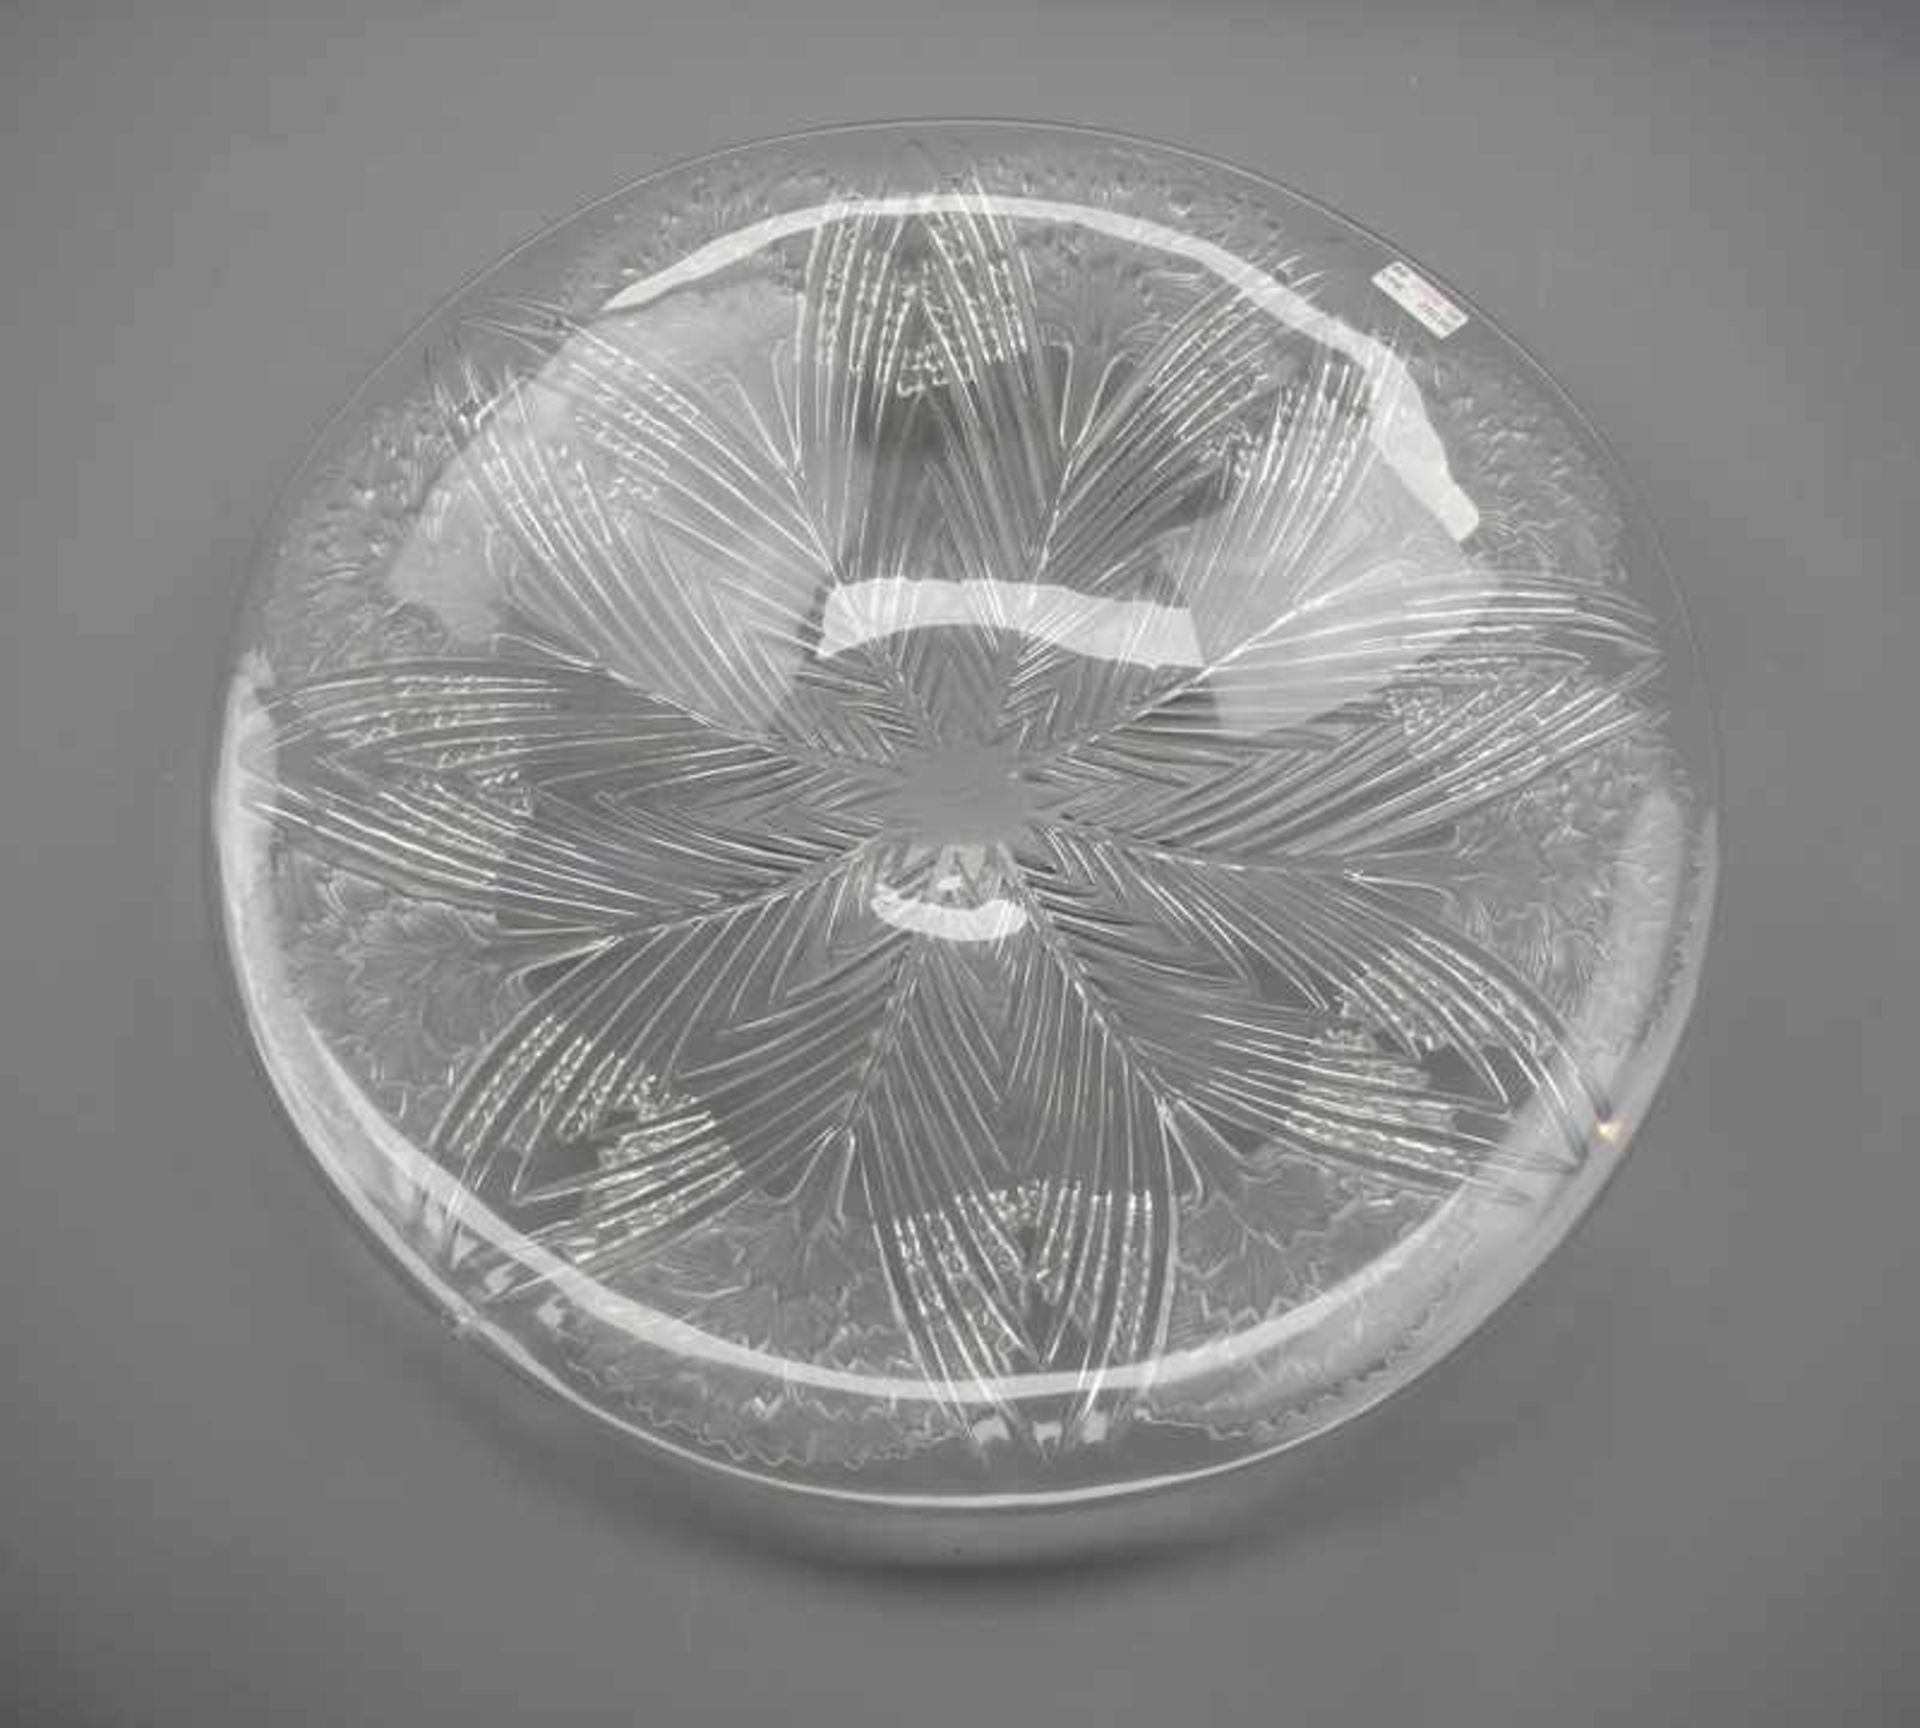 Lalique, Große Glas-SchaleFarbloses Glas, teils milchig geschliffen. Große Schale mit zentralem